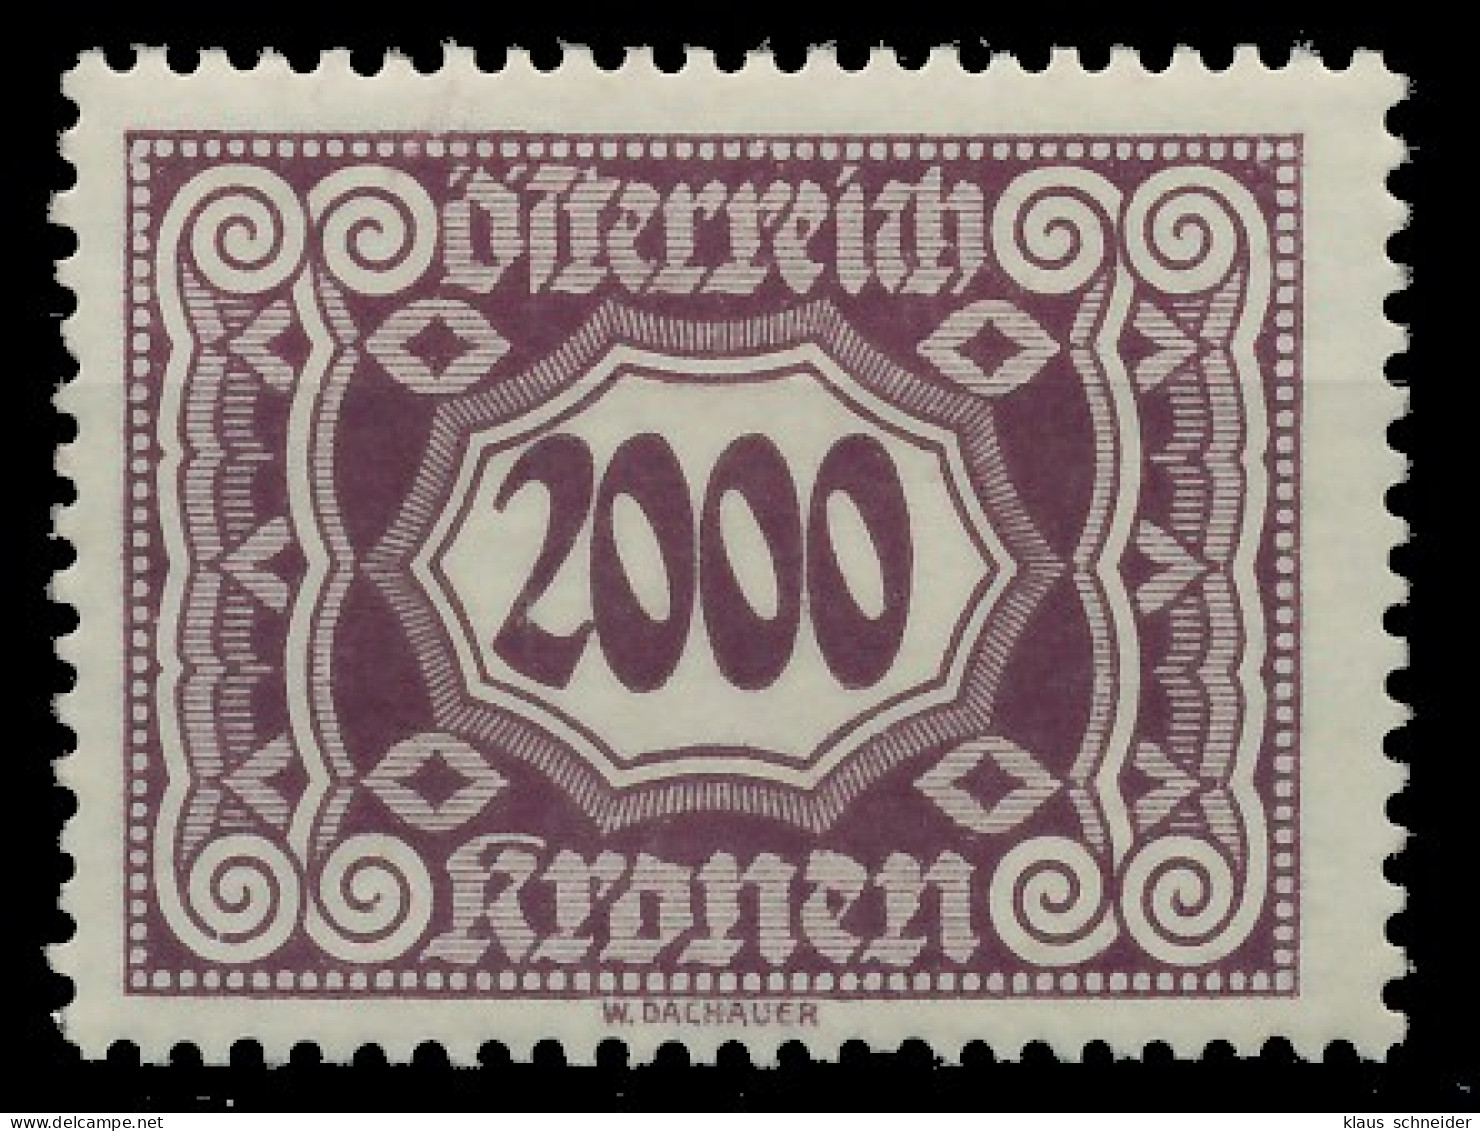 ÖSTERREICH PORTOMARKEN 1922 Nr 128 Postfrisch X753D6A - Postage Due